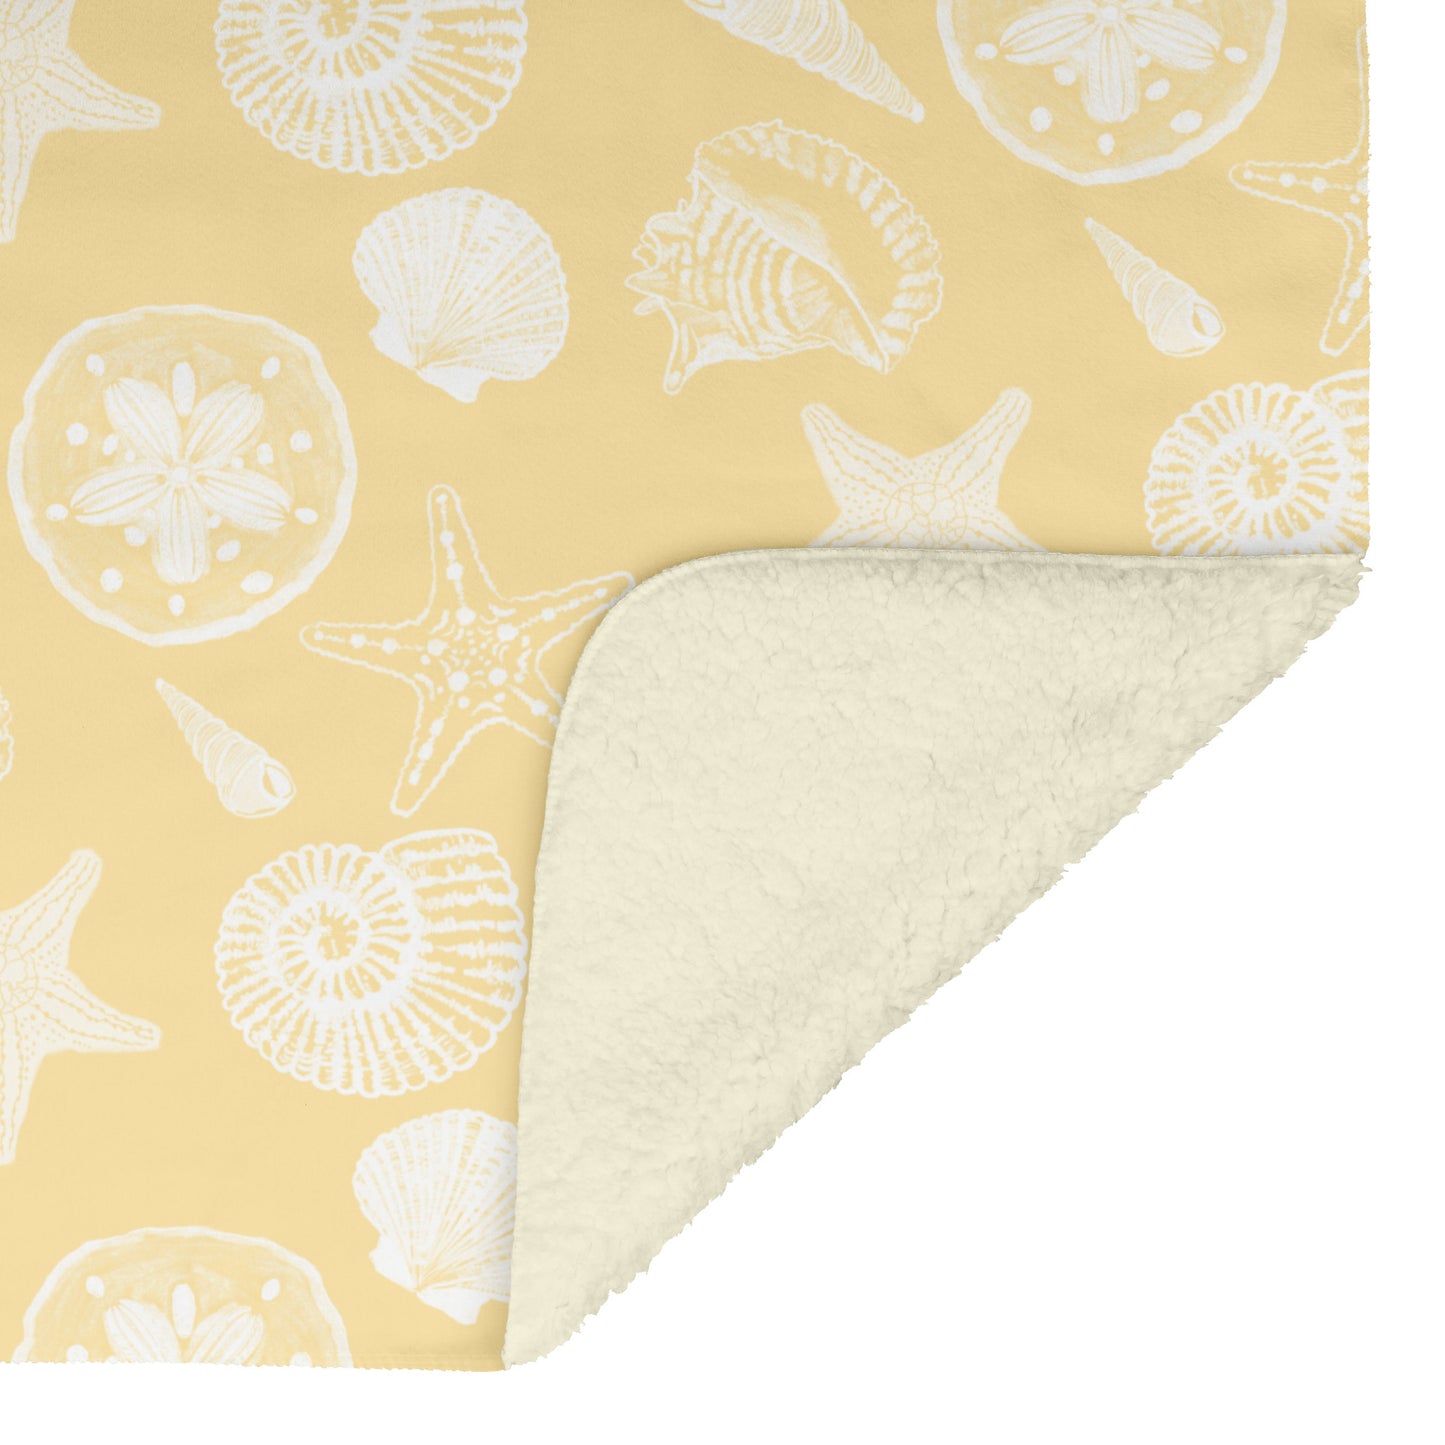 Seashell Sketches on Yellow Background, Fleece Blanket